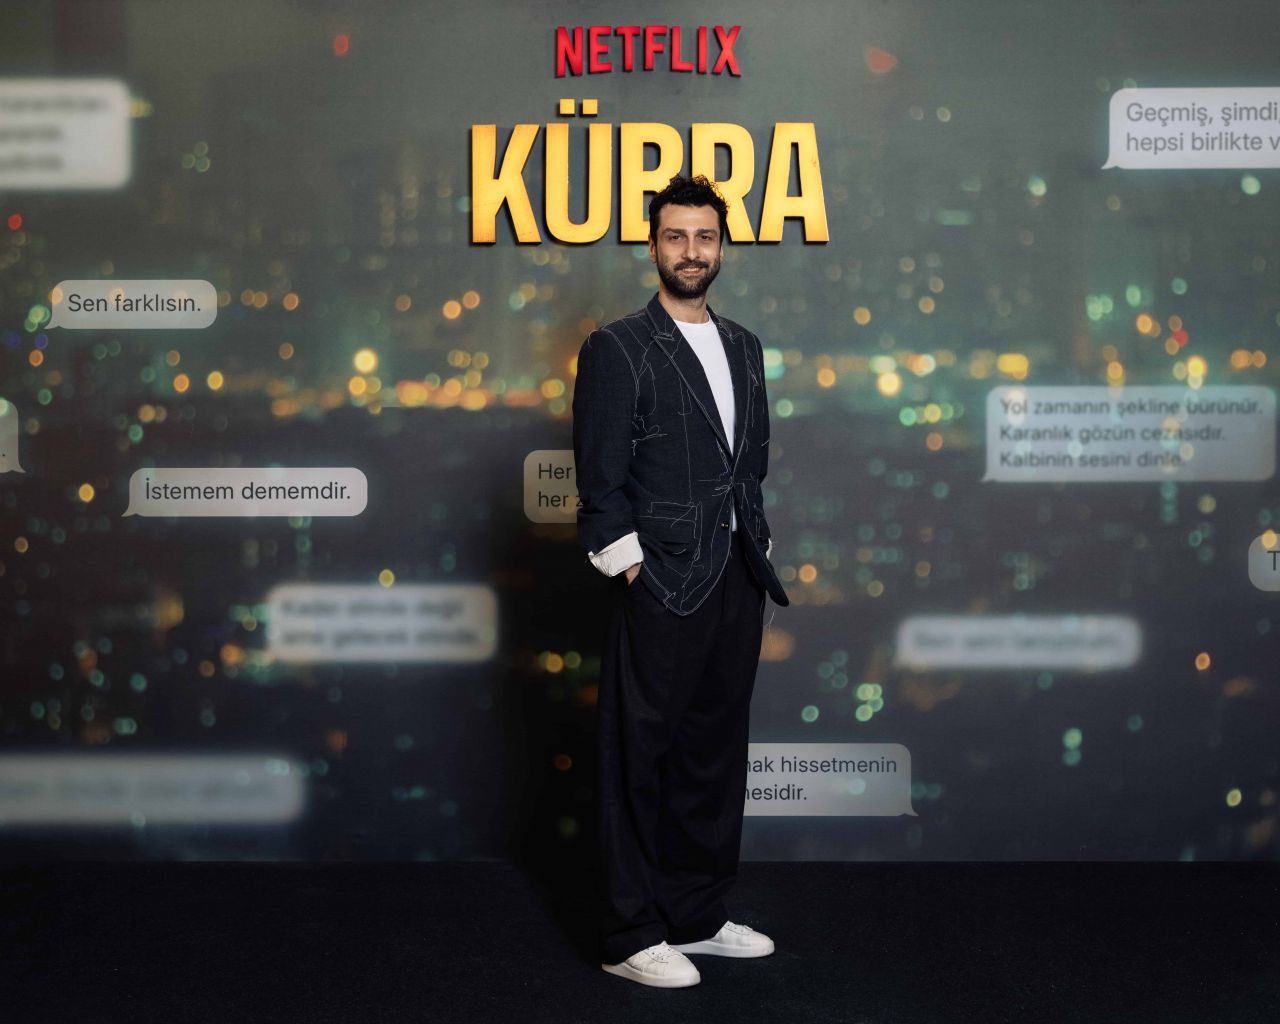 Çağatay Ulusoy’un yeni Netflix dizisi Kübra’nın galası gerçekleşti - Sayfa 4